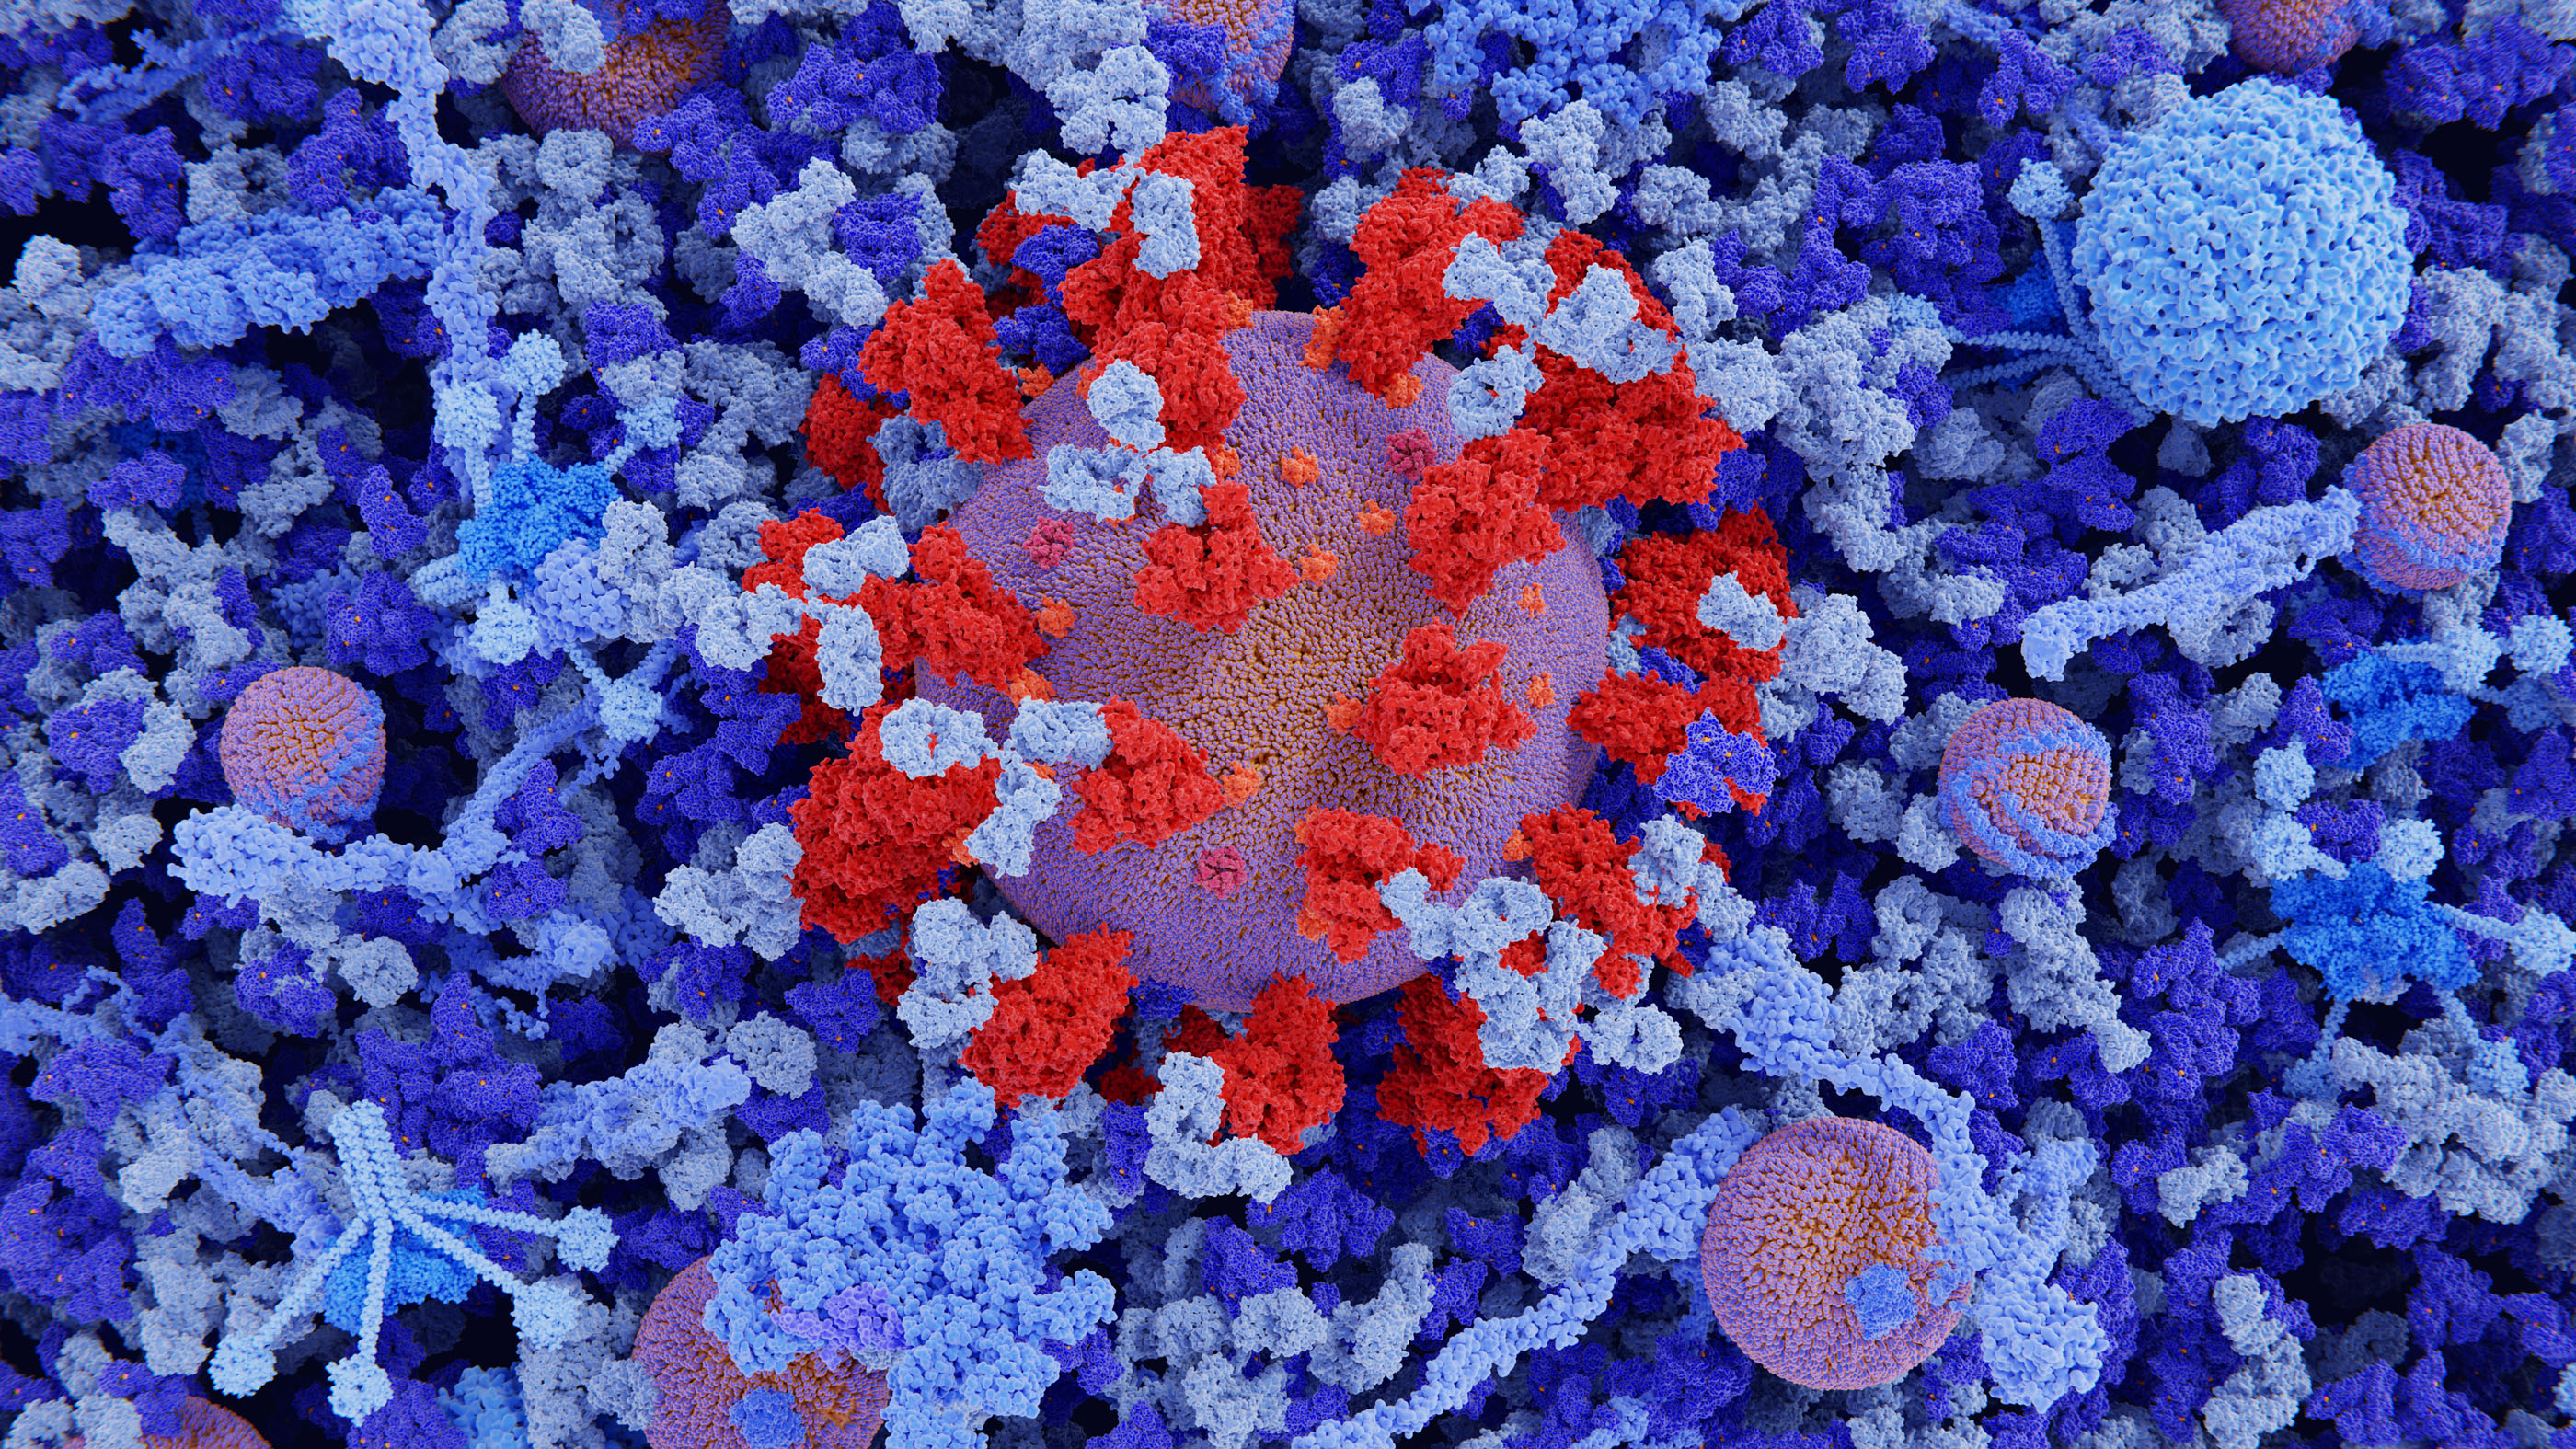 Šioje iliustracijoje pavaizduota koronaviruso dalelė kraujo plazmoje, kurioje rodomi Y formos imunoglobulino G antikūnai (IgG, šviesiai mėlyni), susieti su koronaviruso smaigalio baltymais (raudona).  IgG antikūnai yra Y formos baltymai, kuriuos gamina B limfocitų baltieji kraujo kūneliai kaip imuninio atsako dalis.  Imunoglobulino M antikūnai (IgM) taip pat rodomi šviesiai mėlyna spalva.